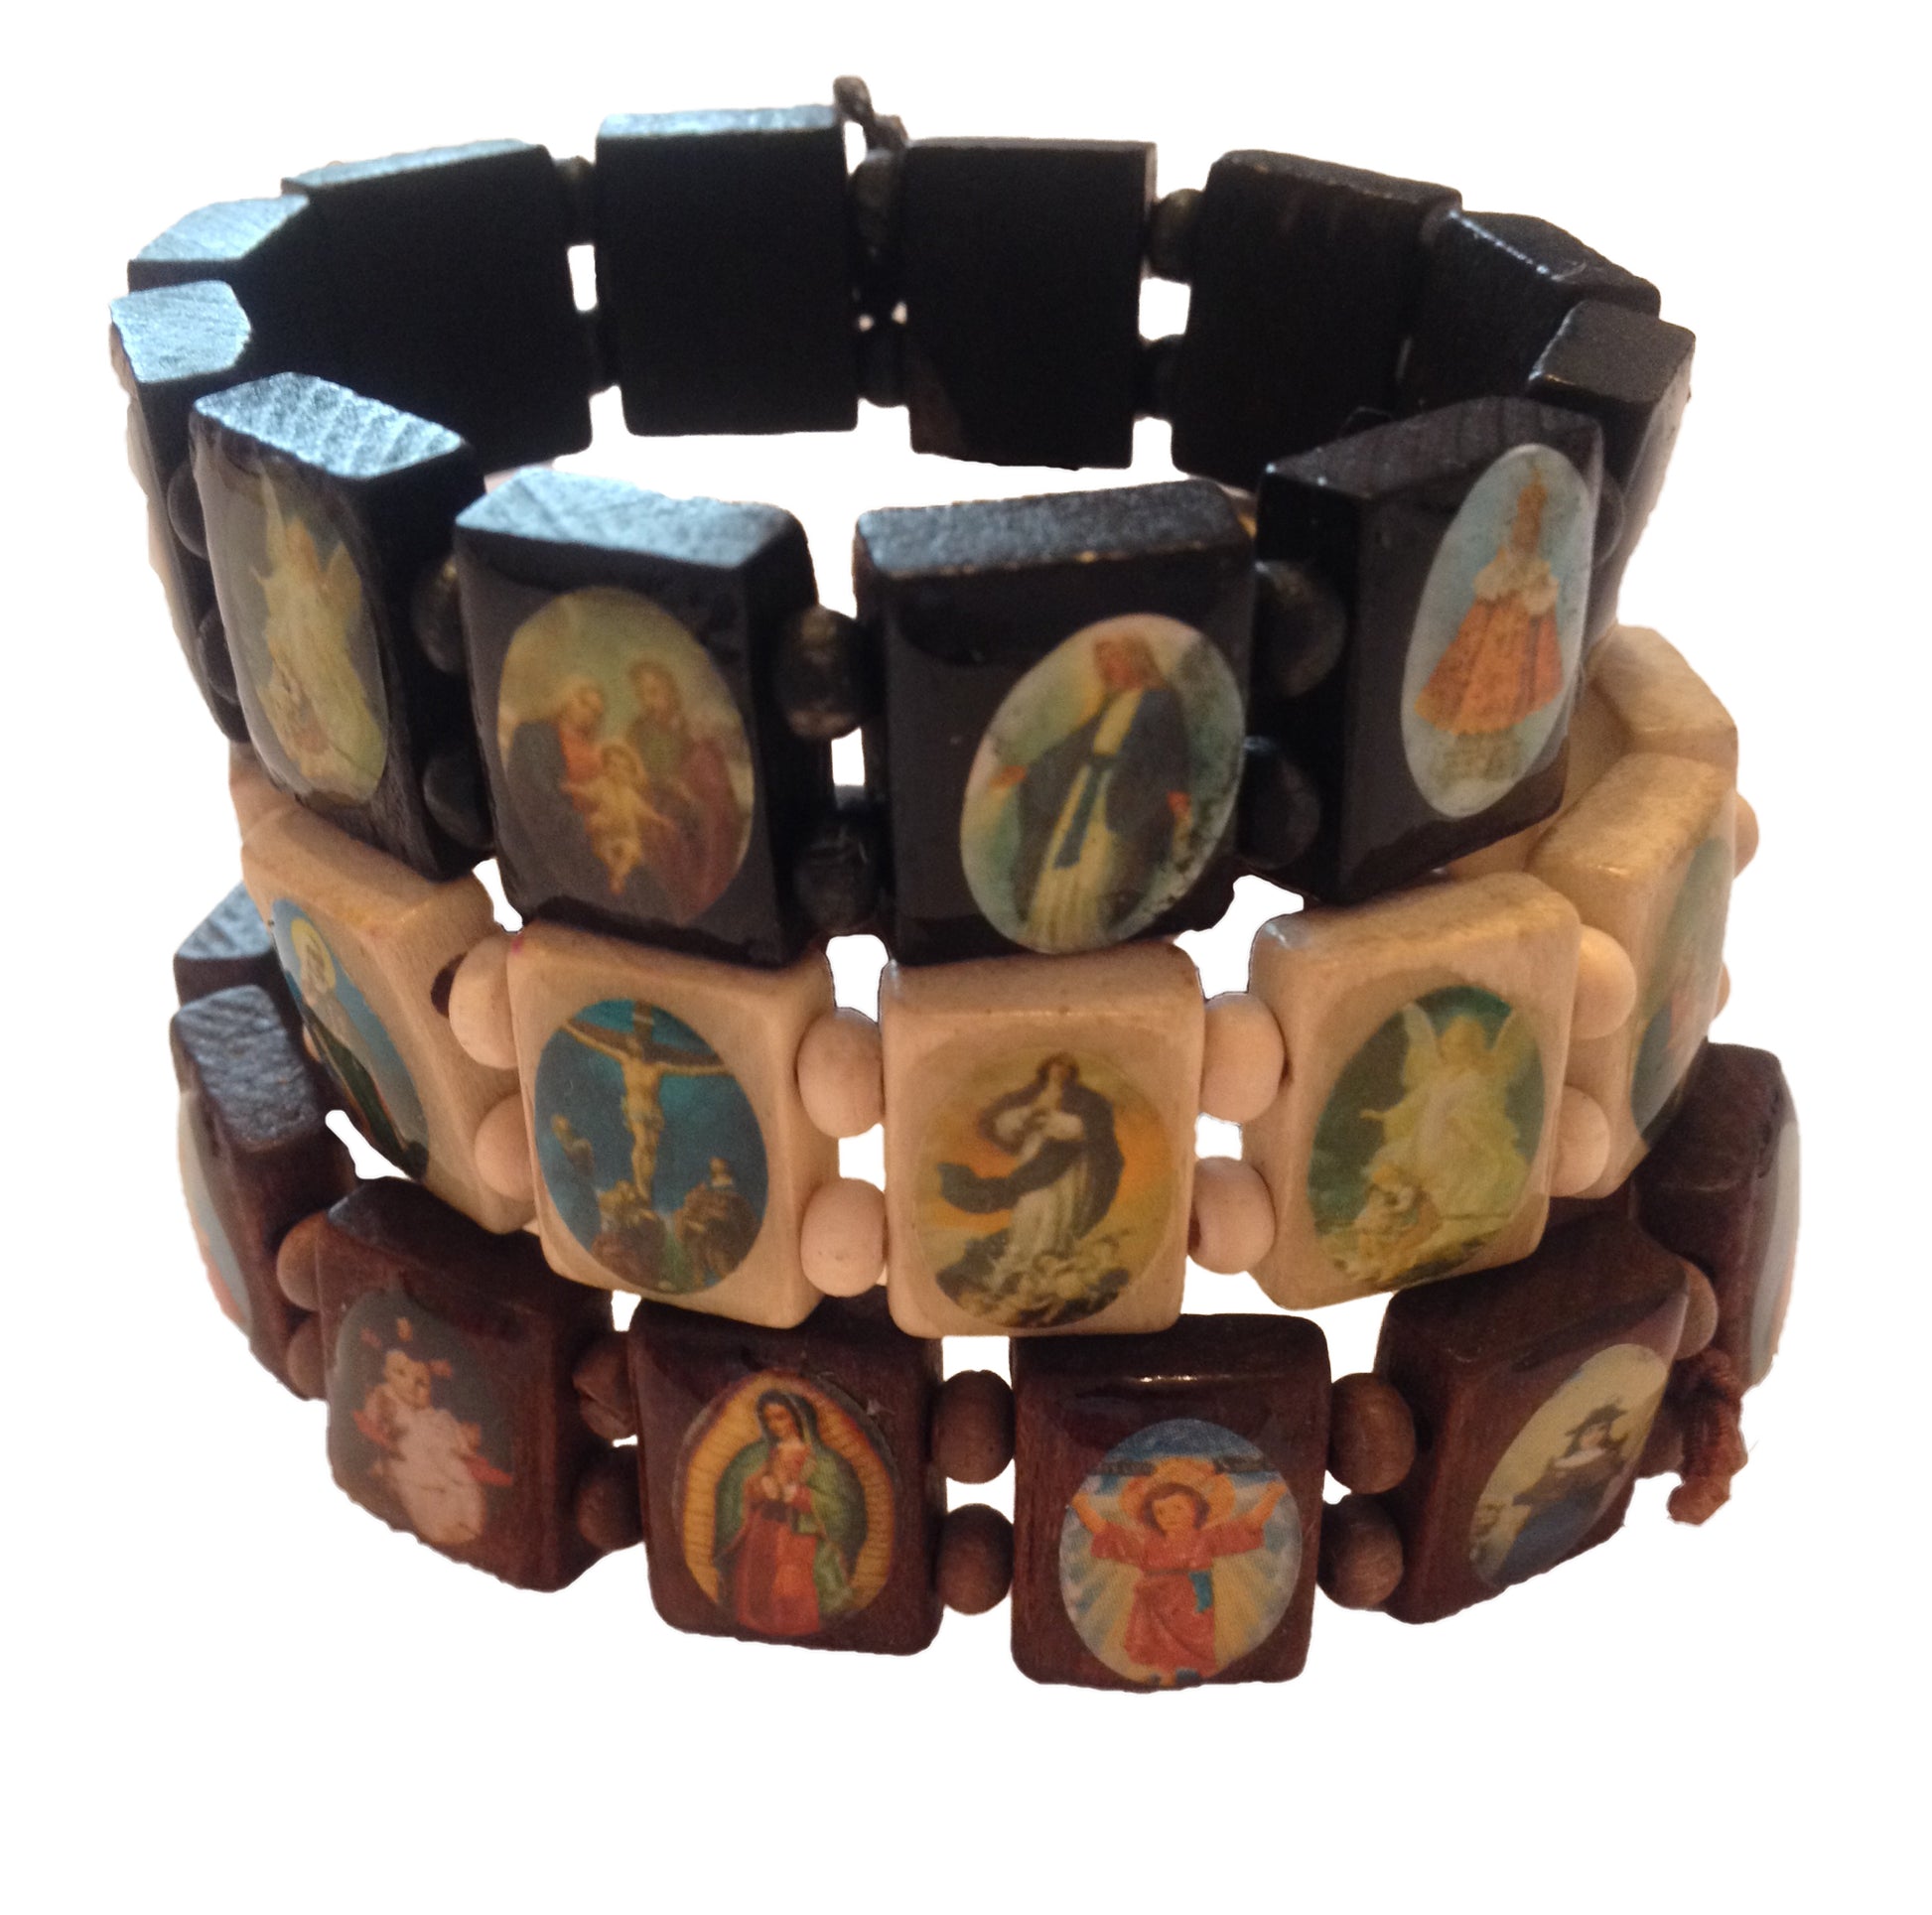 Religious Saints Bracelet, Elasticated handmade wooden all saints bracelet / Jesus bracelet / religious bracelet